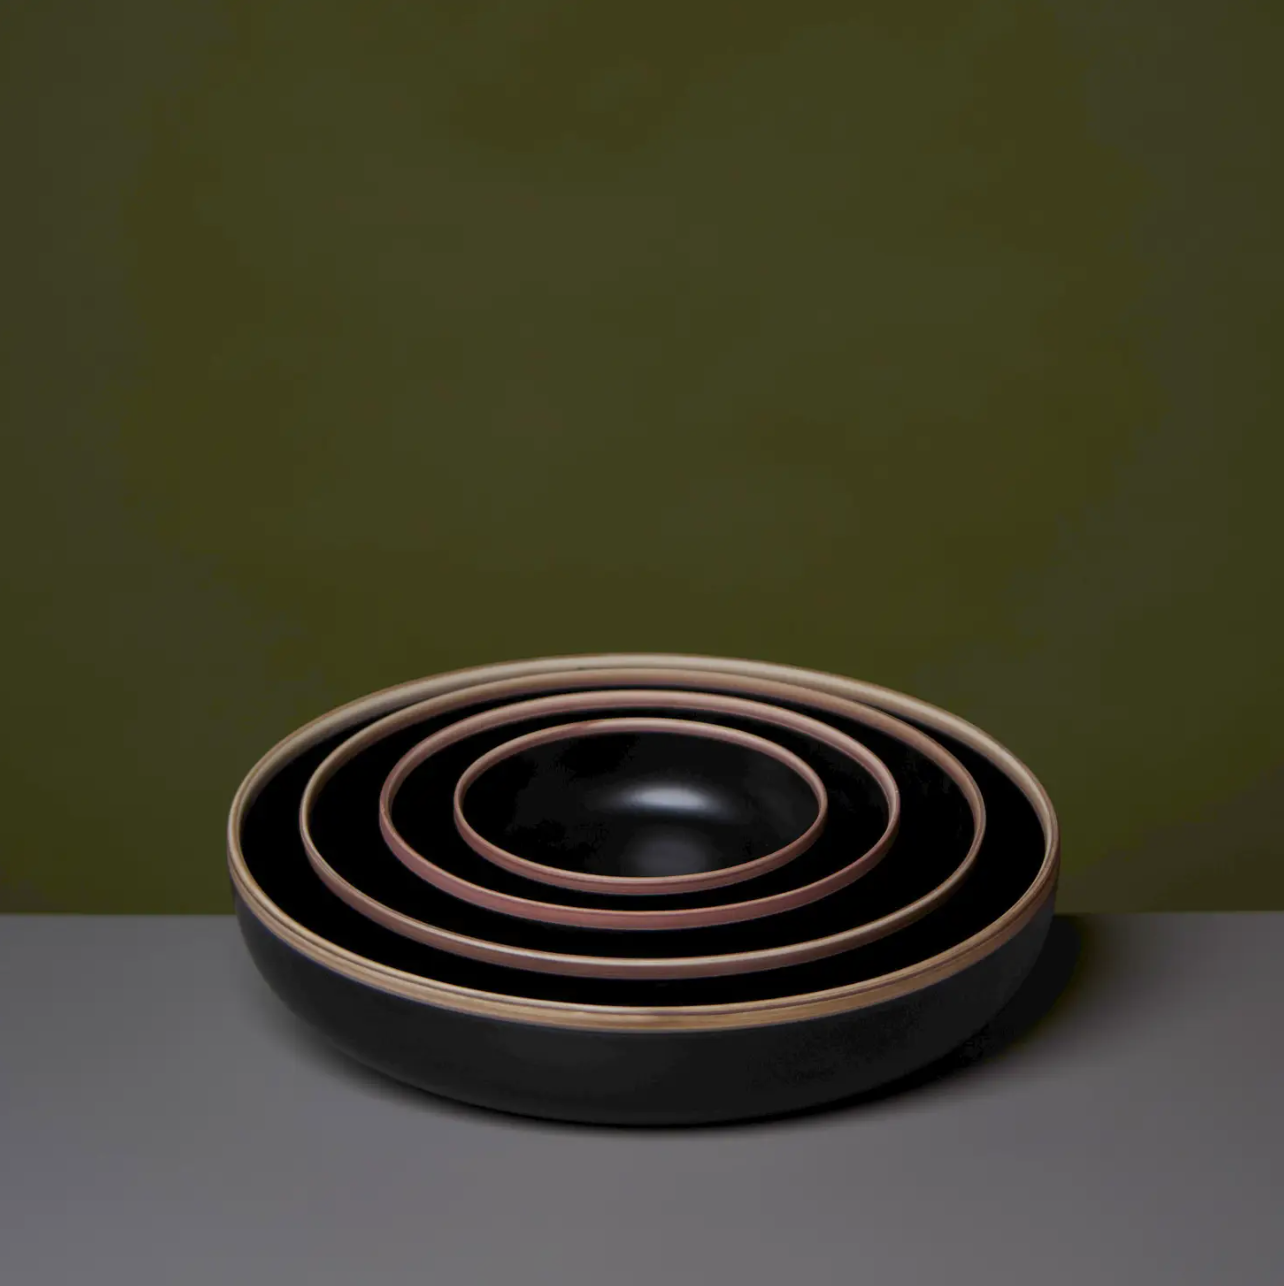 Porcelain Nesting Bowls, Matte Black